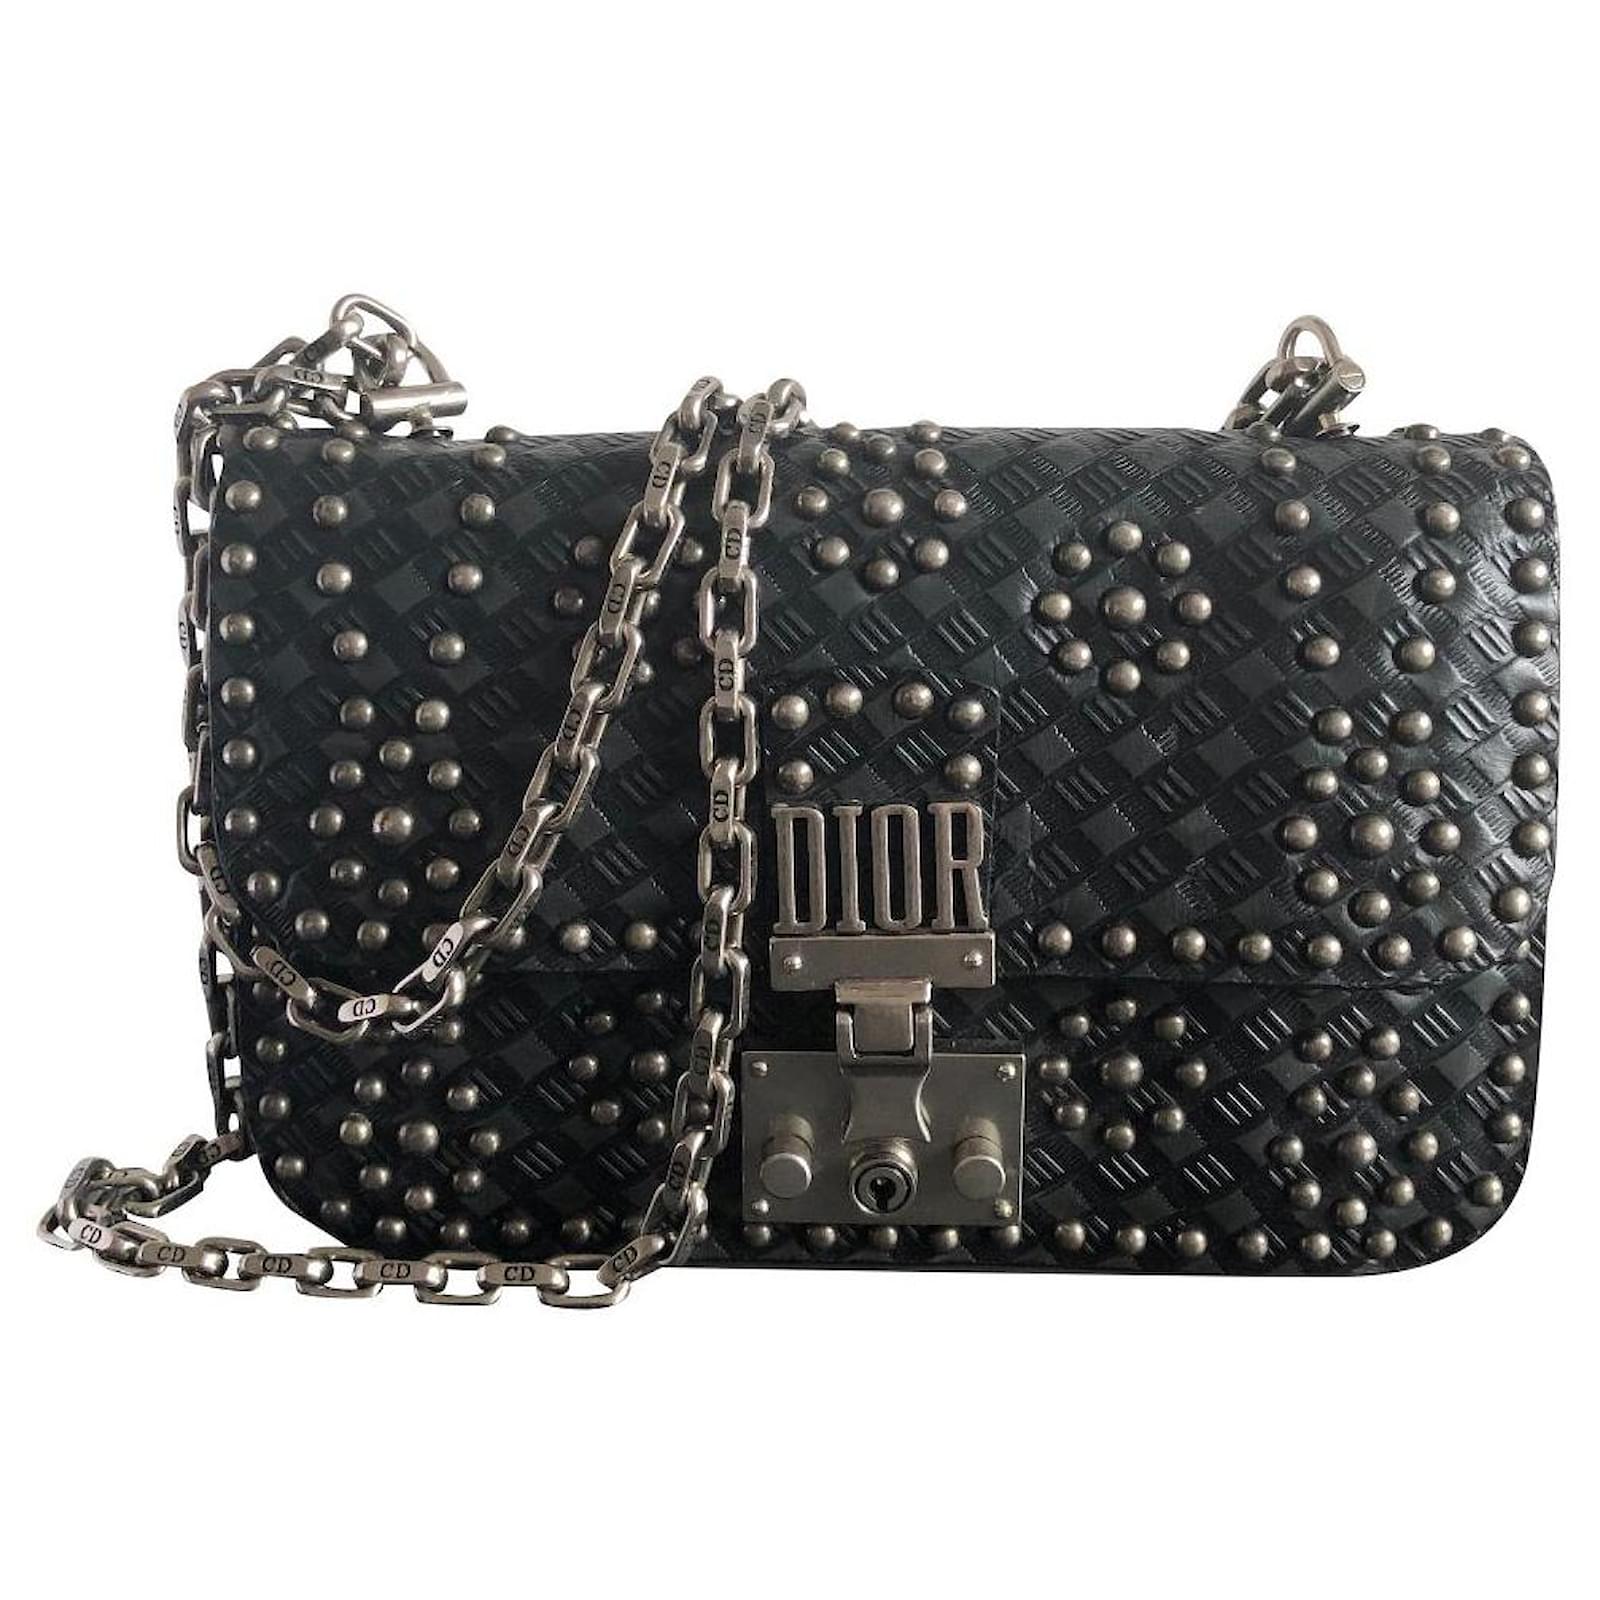 Christian Dior Black Leather Cannage Drawstring Shoulder Bag